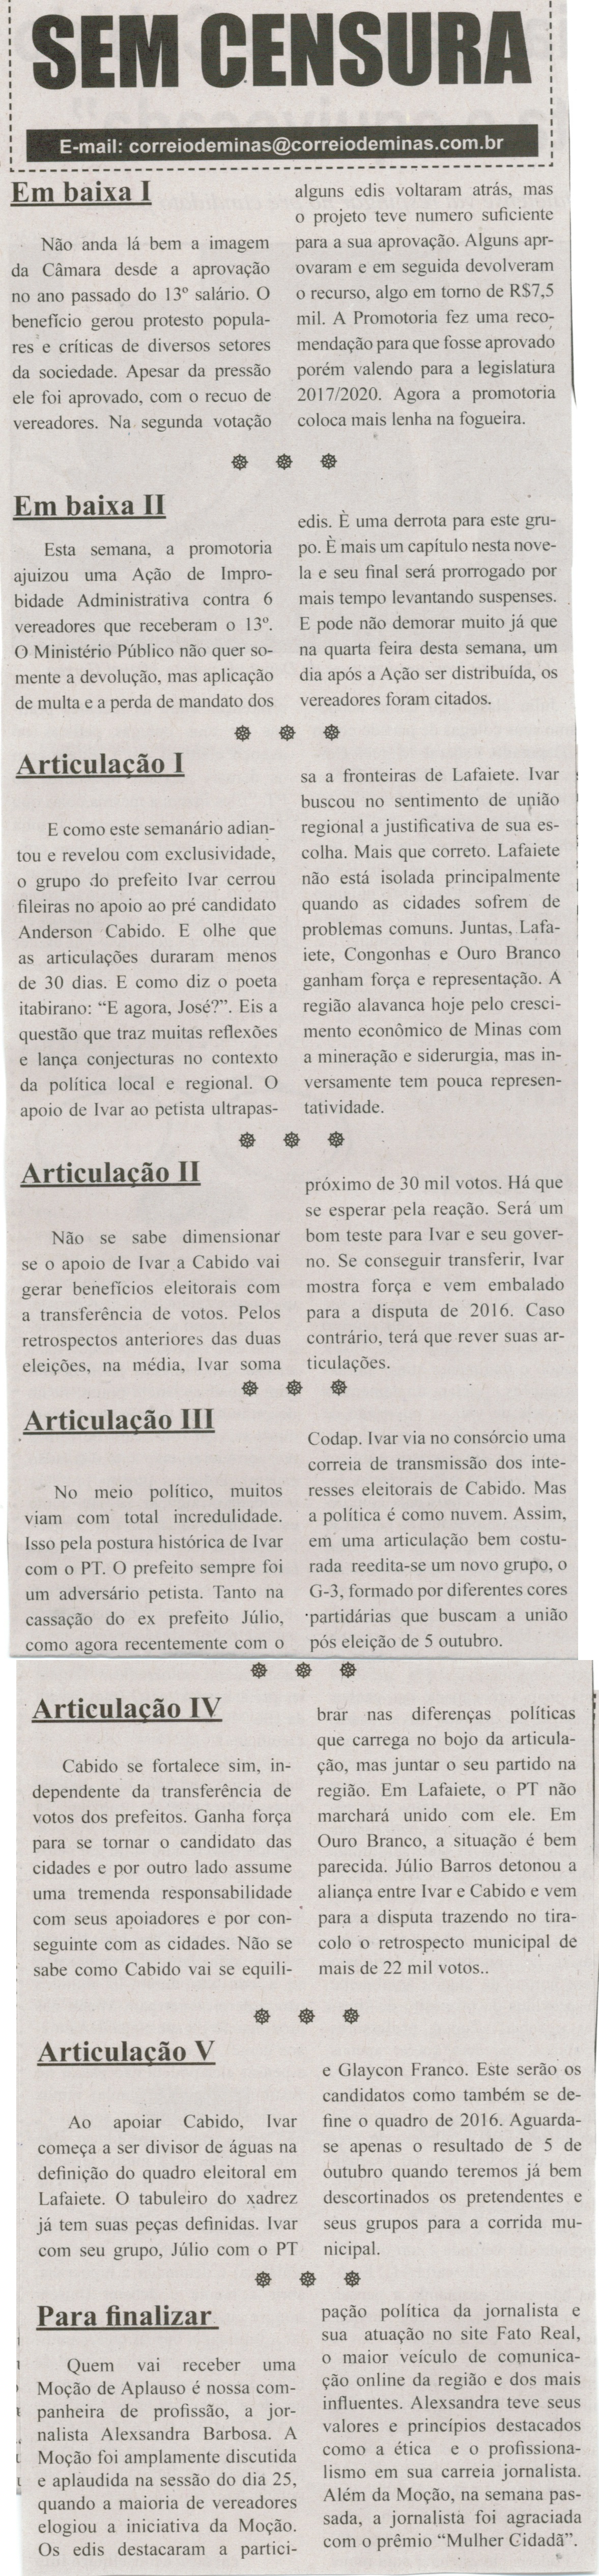 Em baixa I; Em baixa II; Para finalizar. Correio de Minas, Conselheiro Lafaiete, 29 mar. 2014, Sem Censura, p. 3.